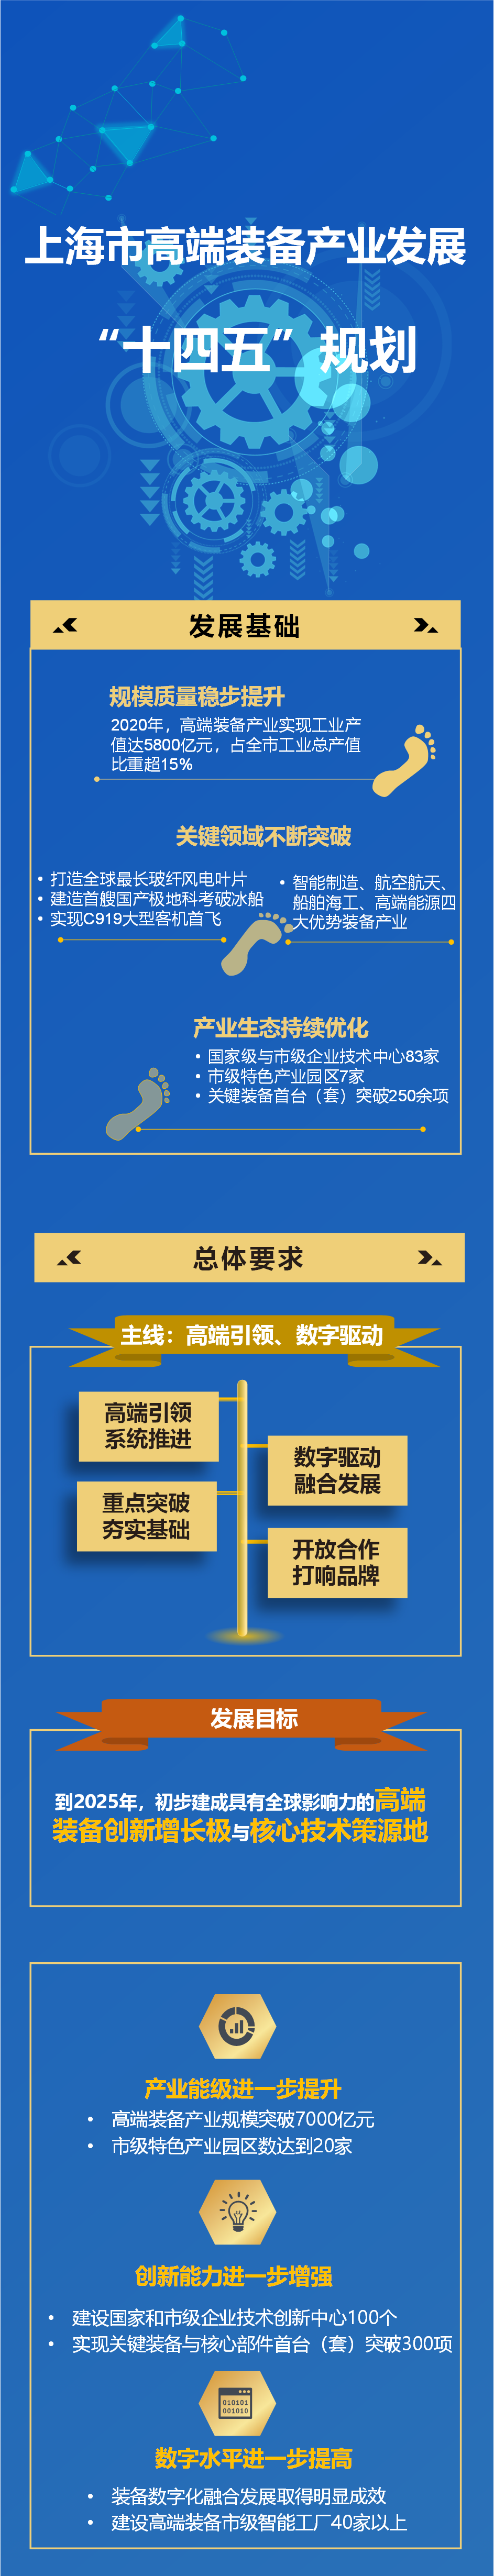 一图读懂《上海市高端装备产业发展“十四五”规划》